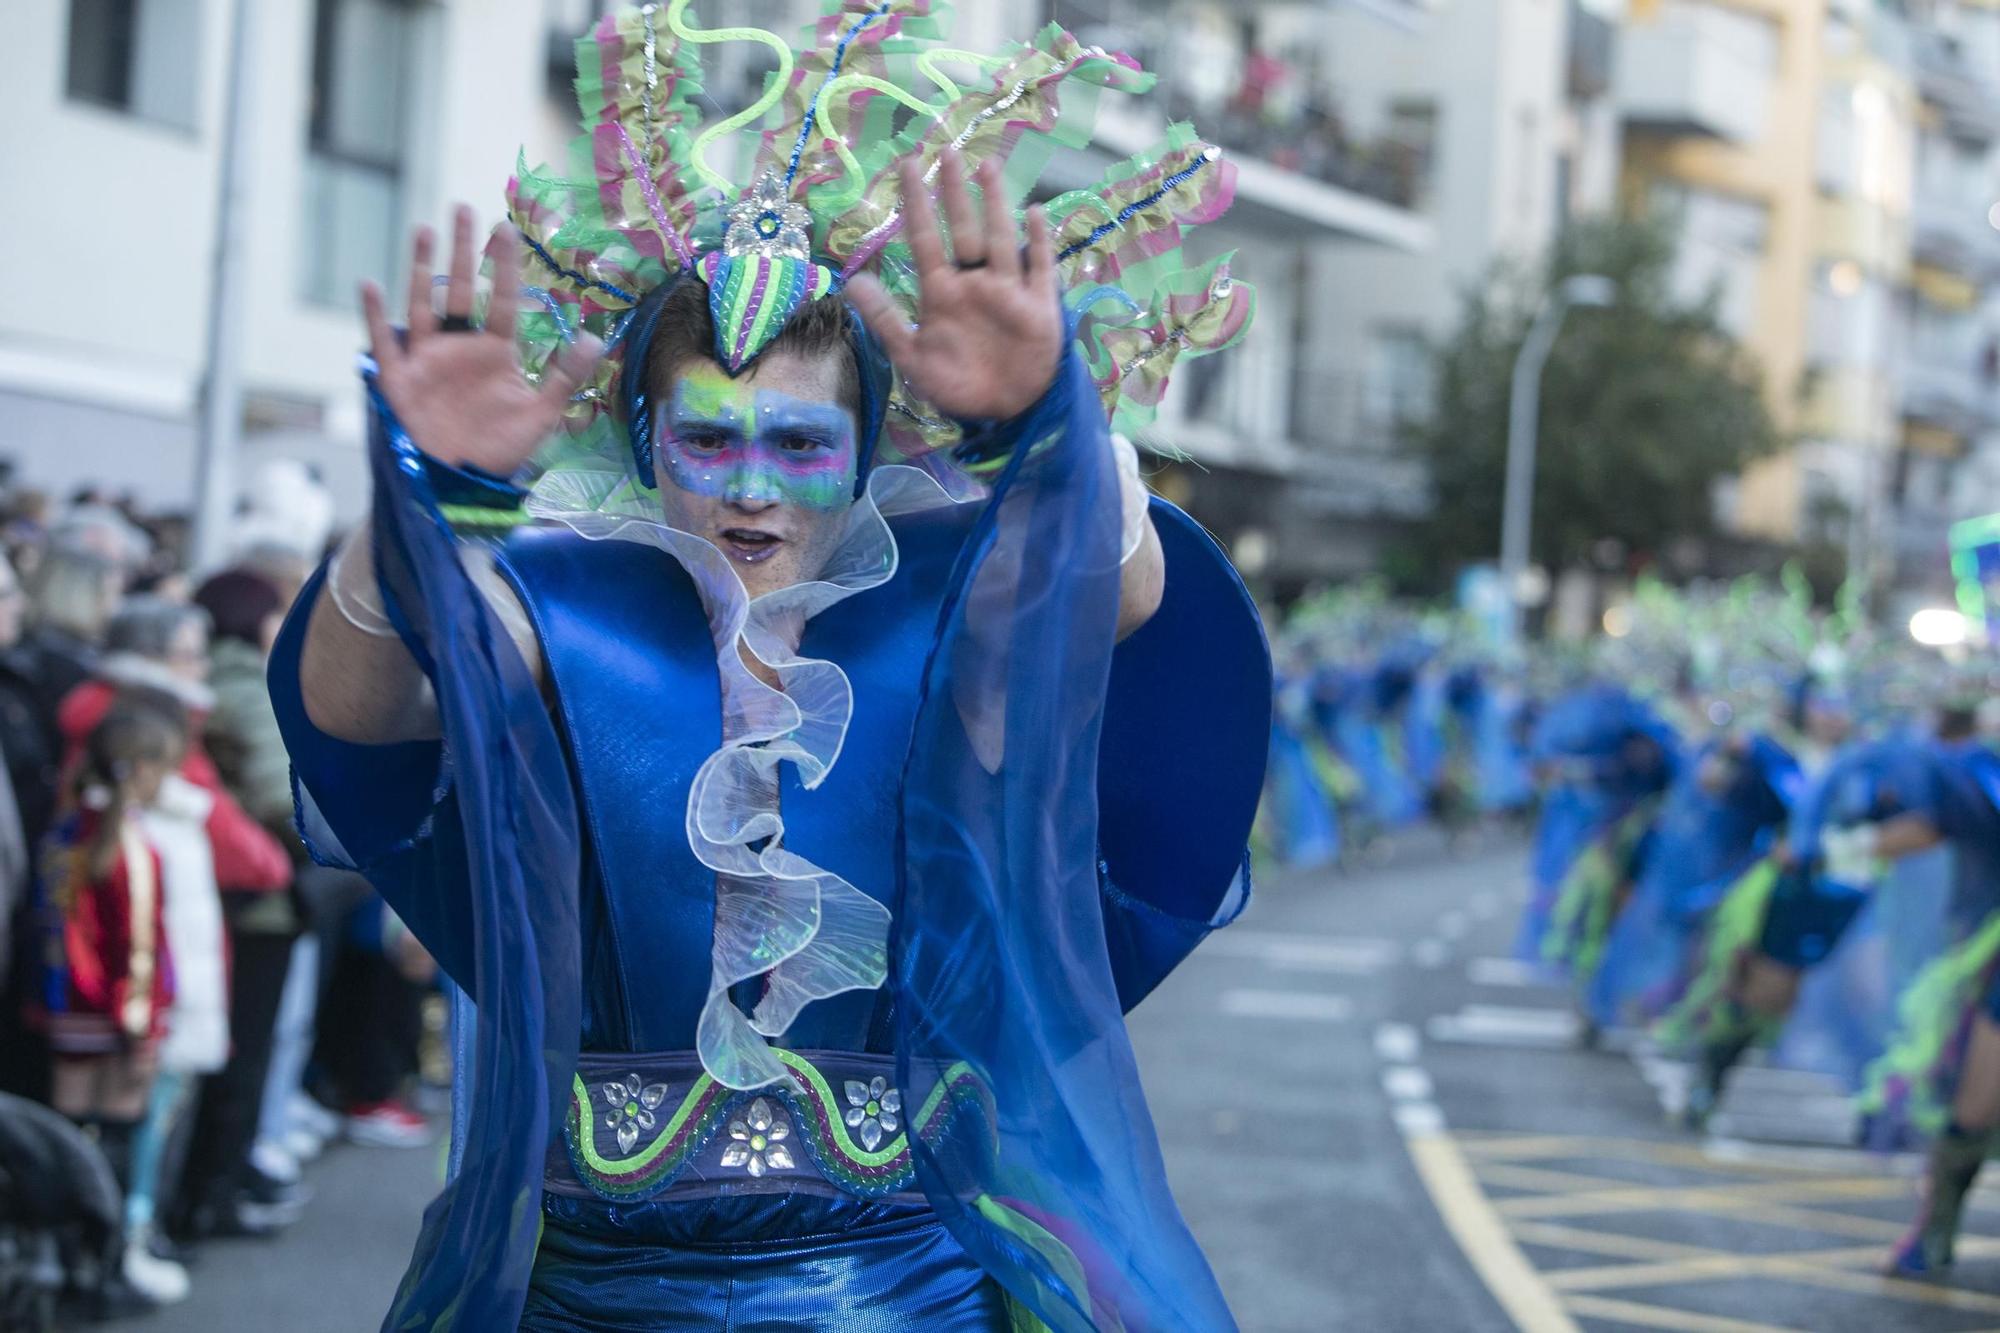 Busca't a les imatges del Carnaval de Blanes